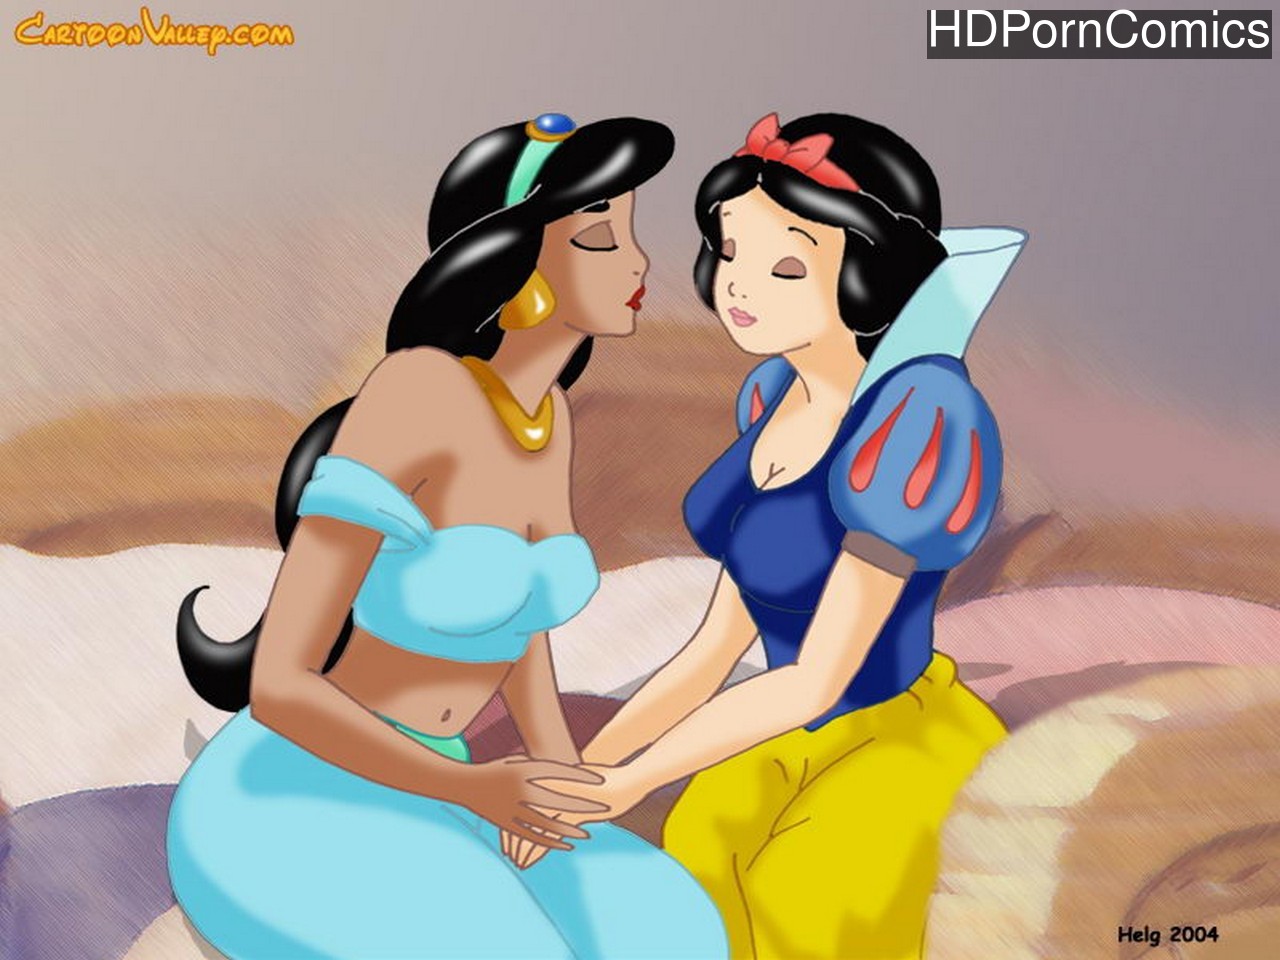 Disney Lesbian Kiss - A Lesbian Kiss comic porn - HD Porn Comics